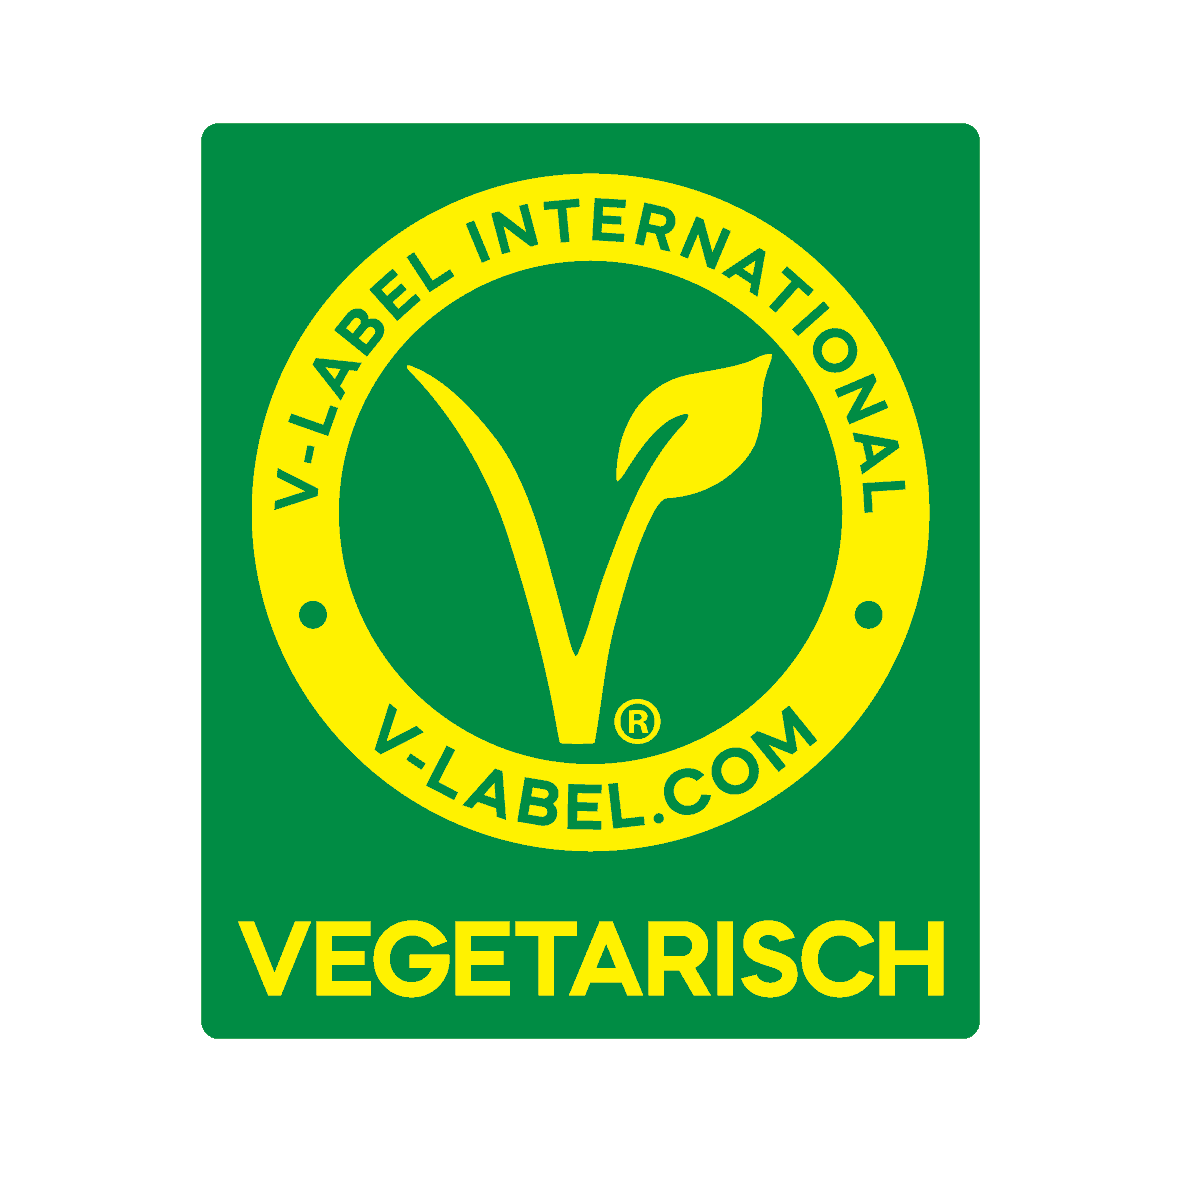 Vegane Gerichte Einfach Erkennen Das V Label Für Die